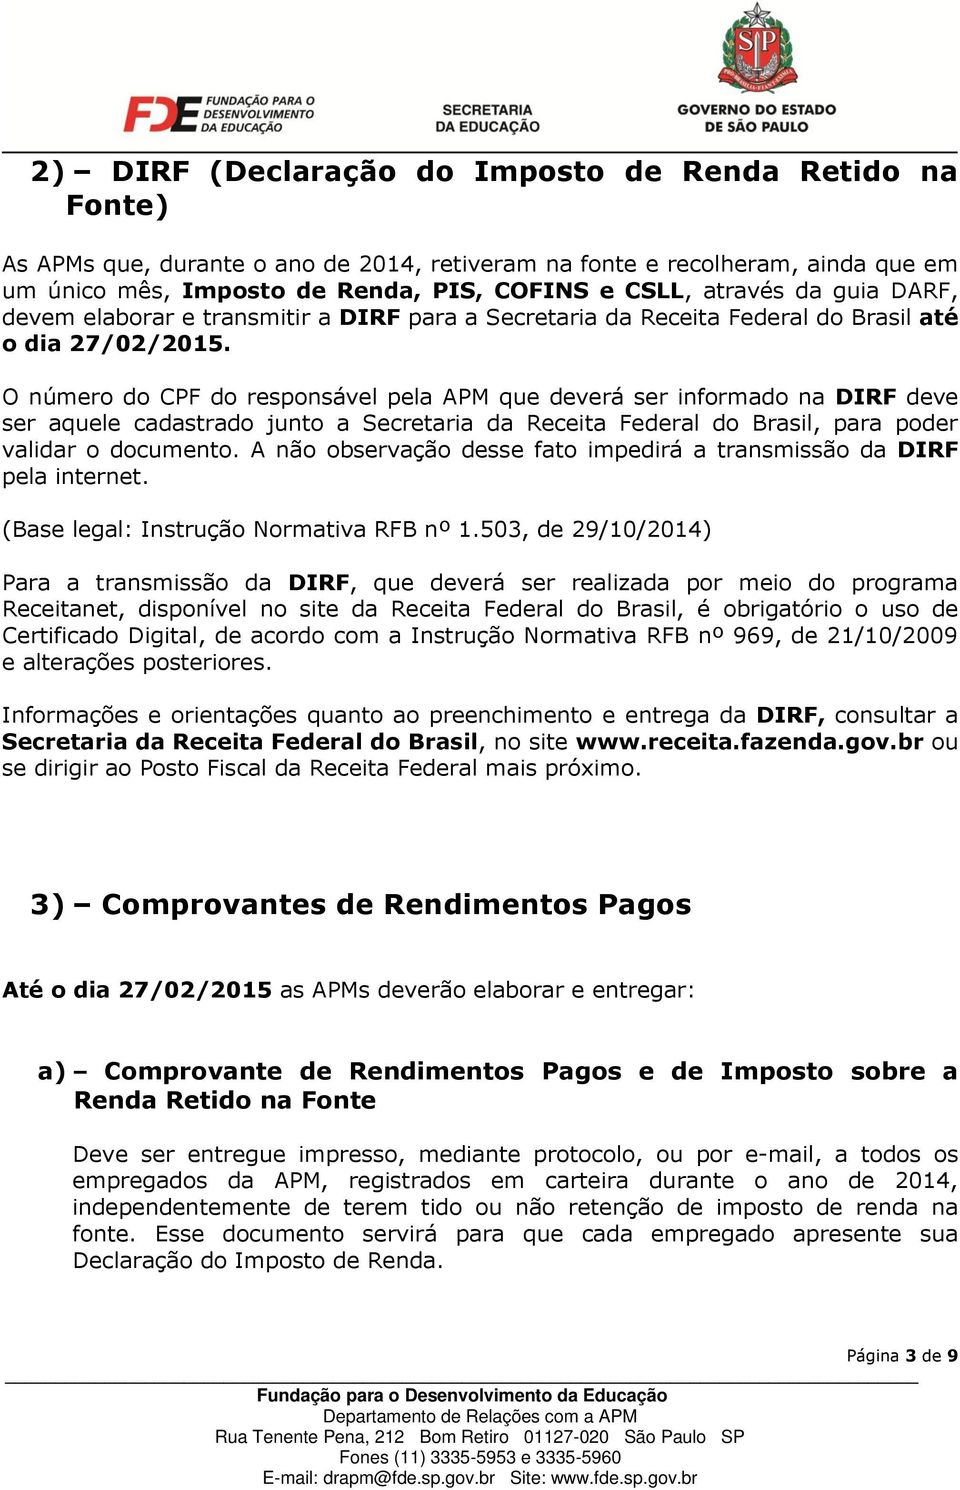 O número do CPF do responsável pela APM que deverá ser informado na DIRF deve ser aquele cadastrado junto a Secretaria da Receita Federal do Brasil, para poder validar o documento.